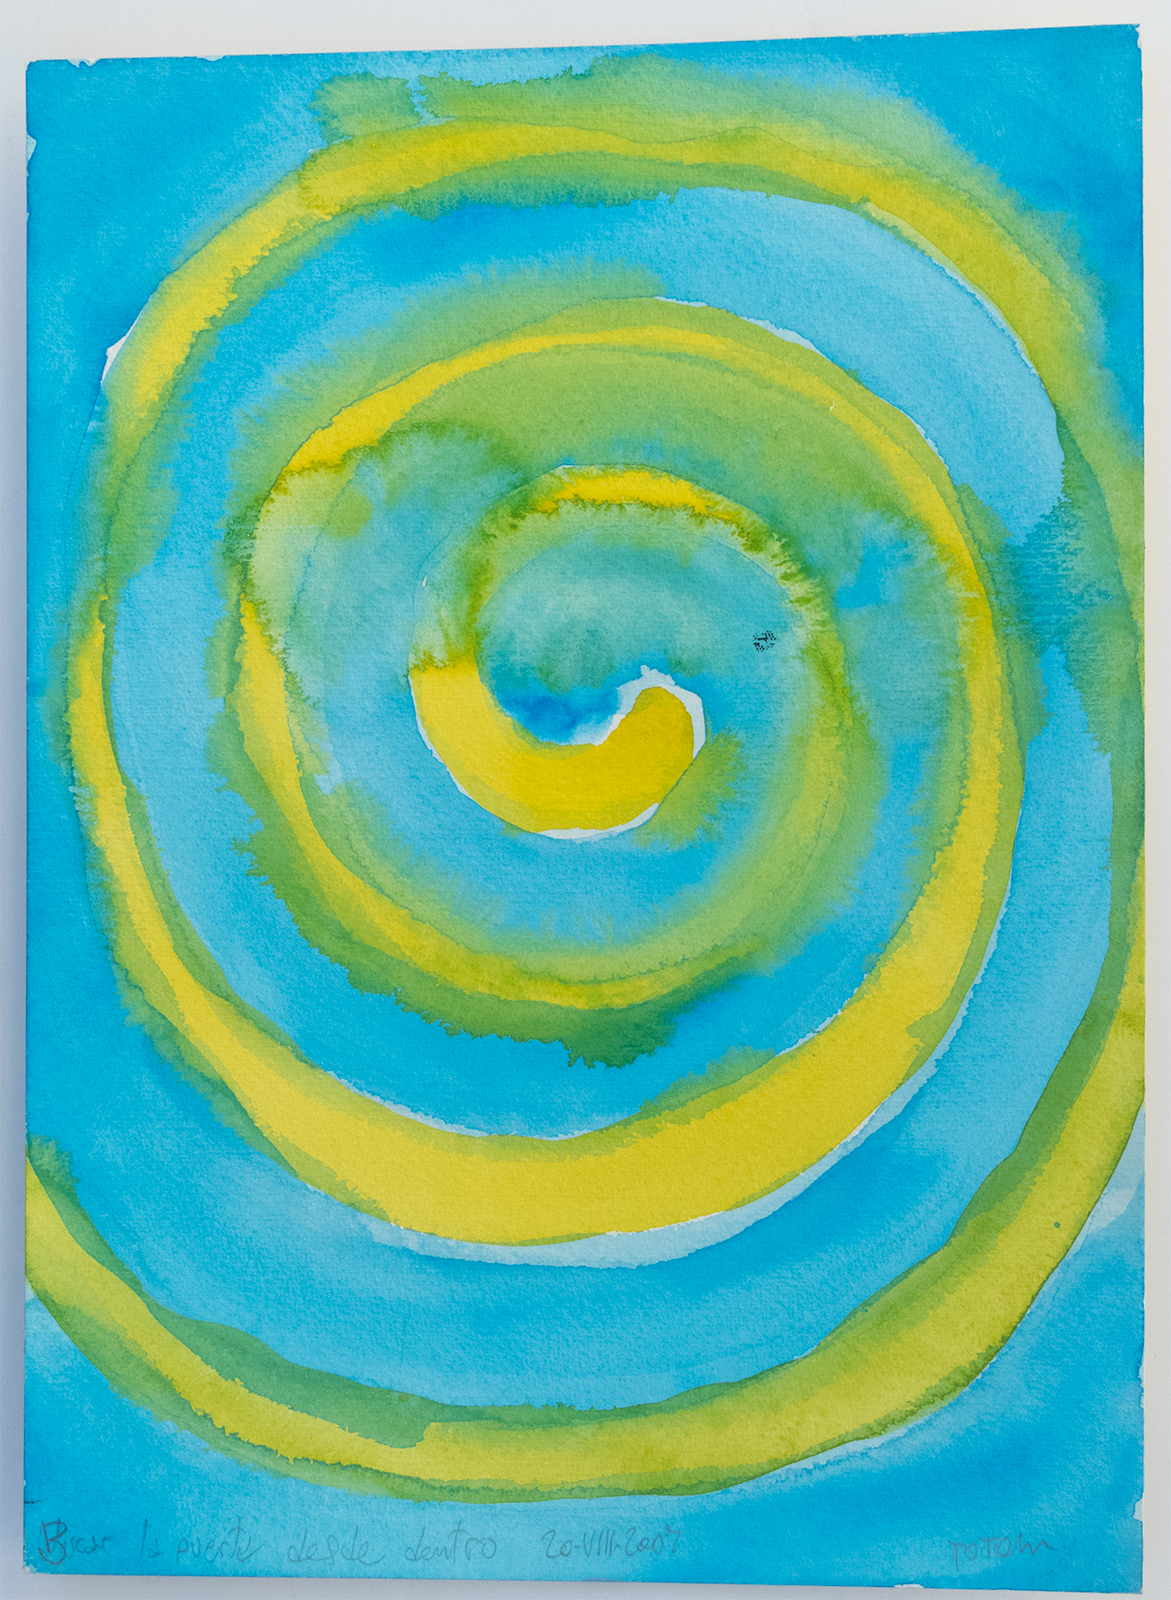 Acuarela espiral azul y amarilla